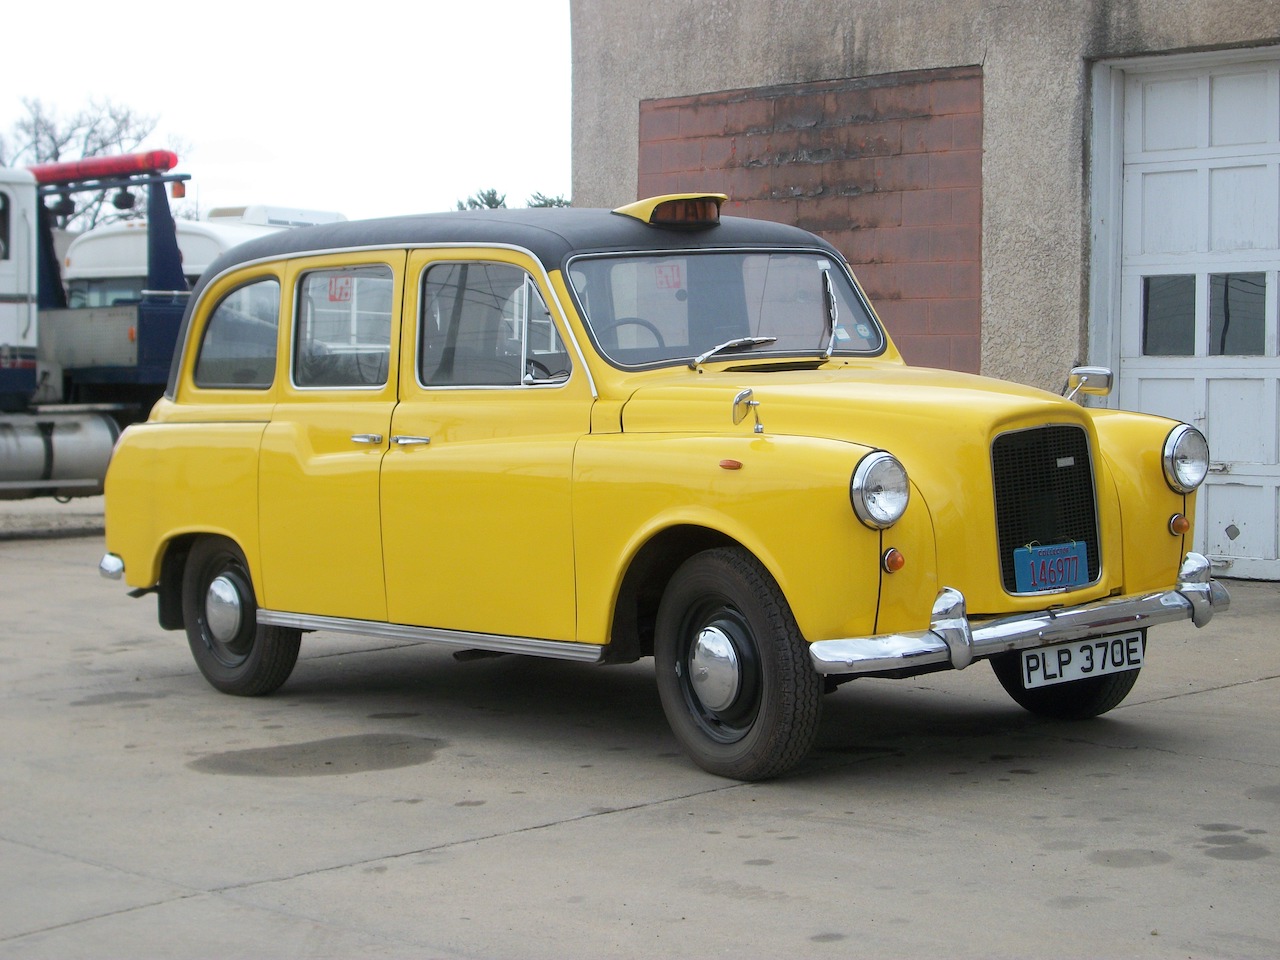 Acheter un taxi classique : Pourquoi ces véhicules utilitaires sont le complément idéal de toute collection de voitures classiques.